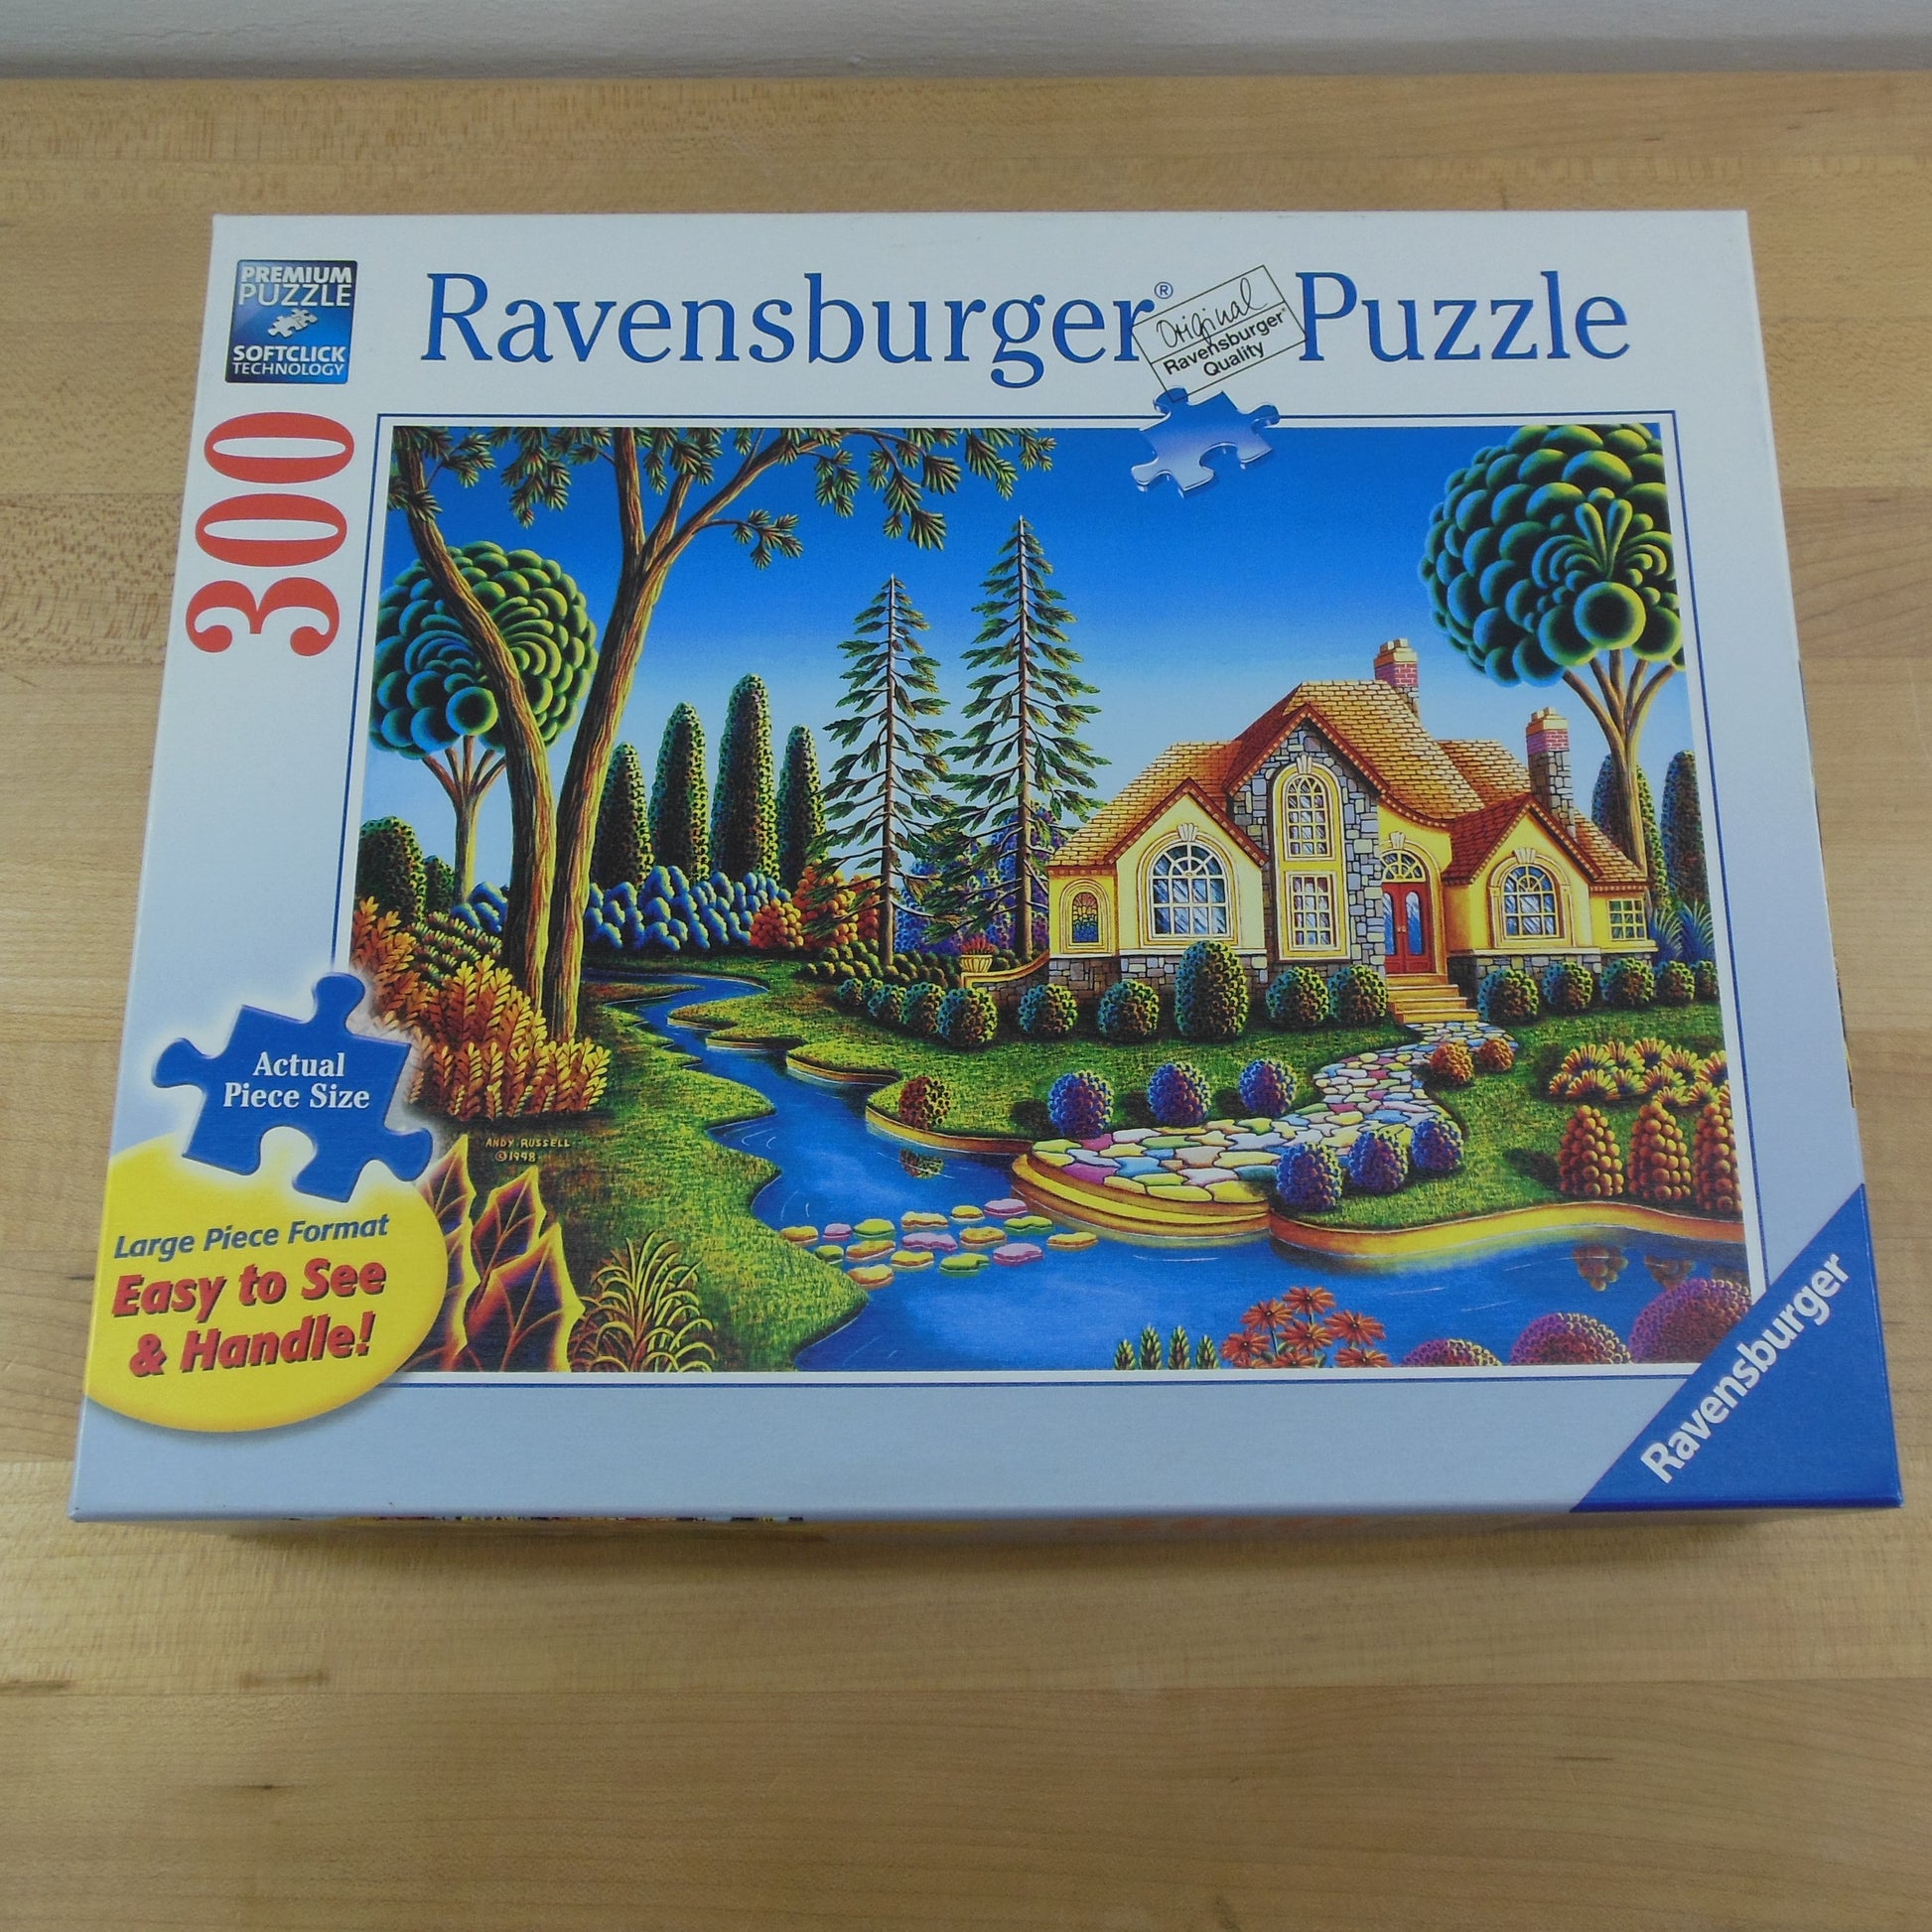 Ravensburger Puzzle 3 Lot 300 Large Pieces Cottage Dream Toy Shelf Flower Kaleidoscope Landscape